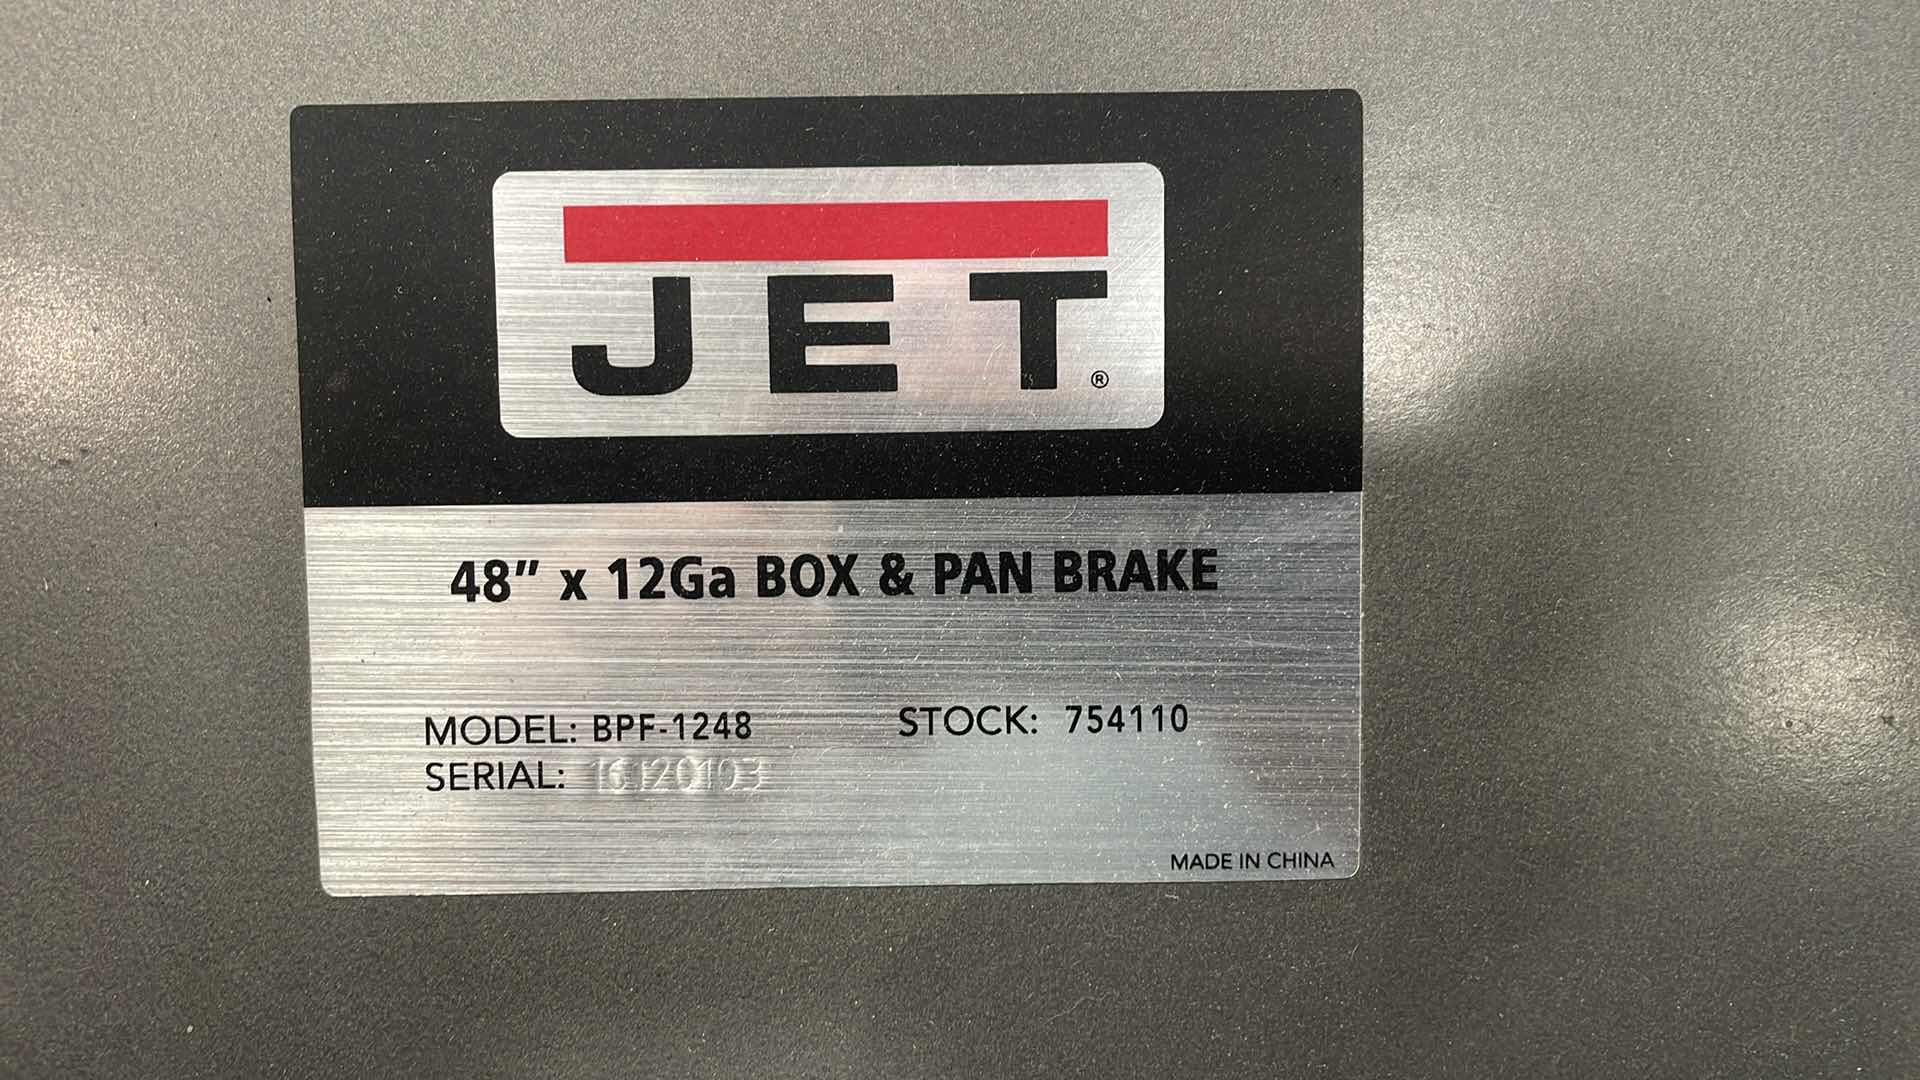 Photo 6 of JET 48” X 12GA BOX & PAN BRAKE

JET 48-INCH BOX AND PAN BRAKE, 12-GAUGE MILD STEEL (BPF-1248)